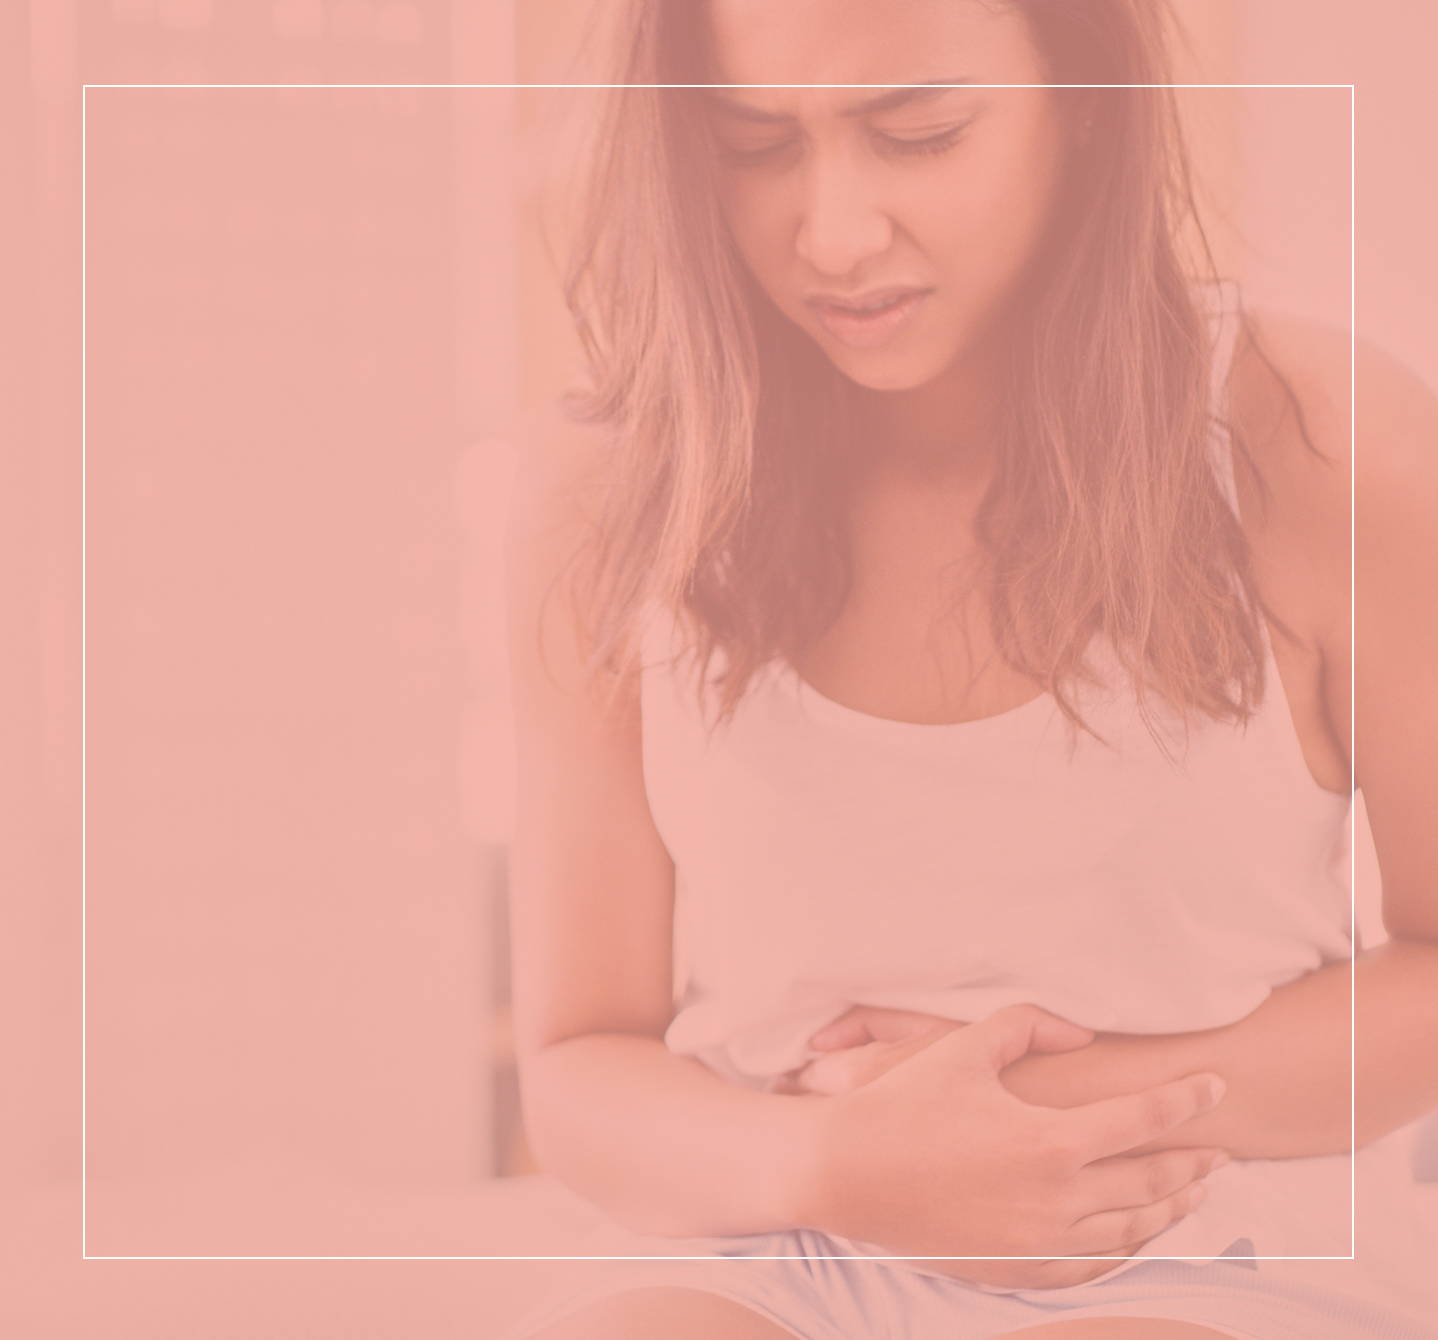 Femme se tenant le ventre et se penchant légèrement en avant avec un signe de malaise sur le visage. Elle ressent peut-être des symptômes d’allergie alimentaire.